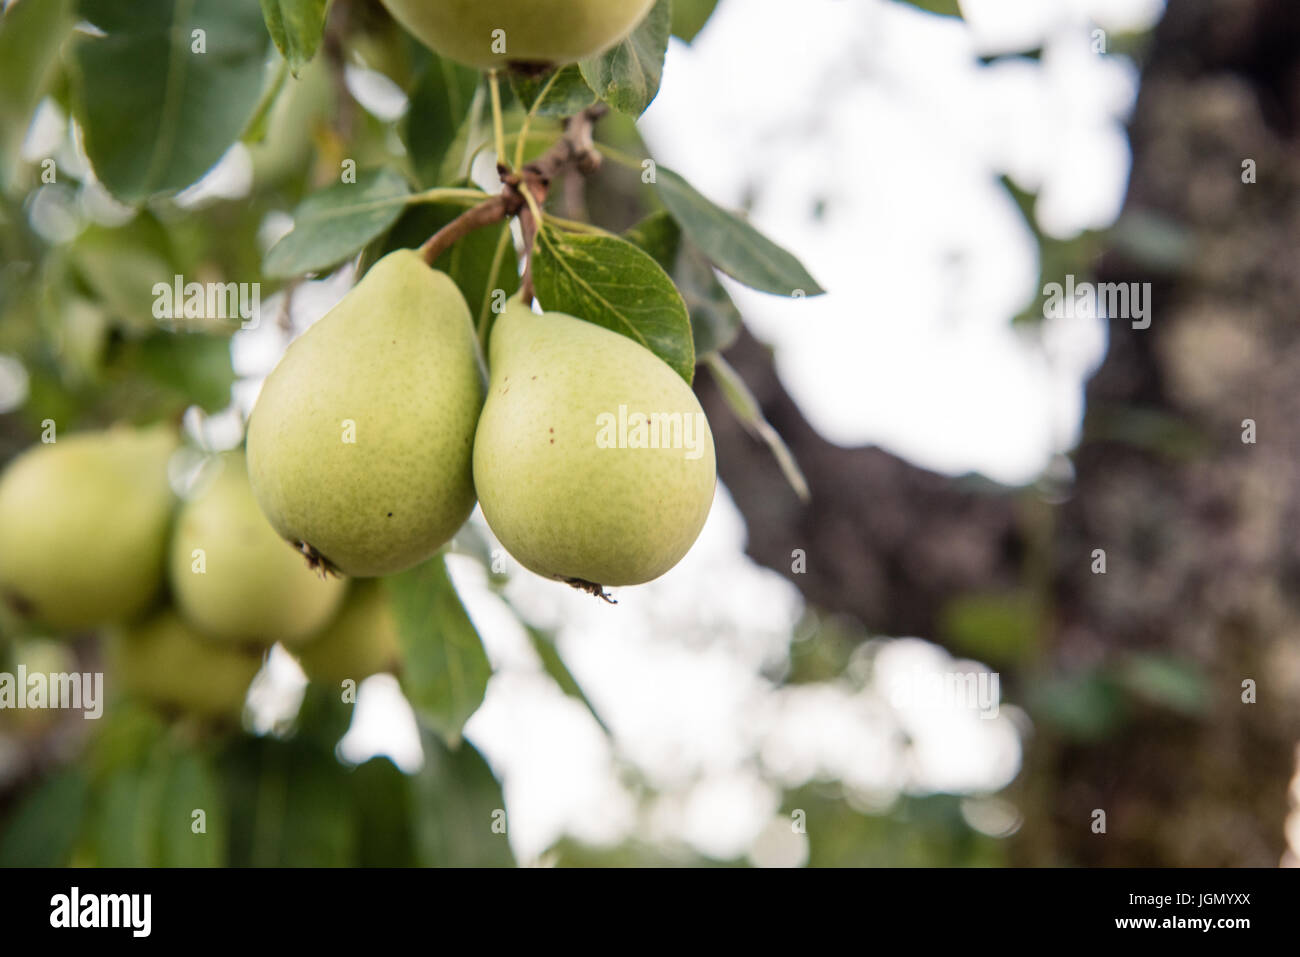 Viele unreife Birne Früchte am Ast mit grünen Blättern, selektiven Fokus Stockfoto